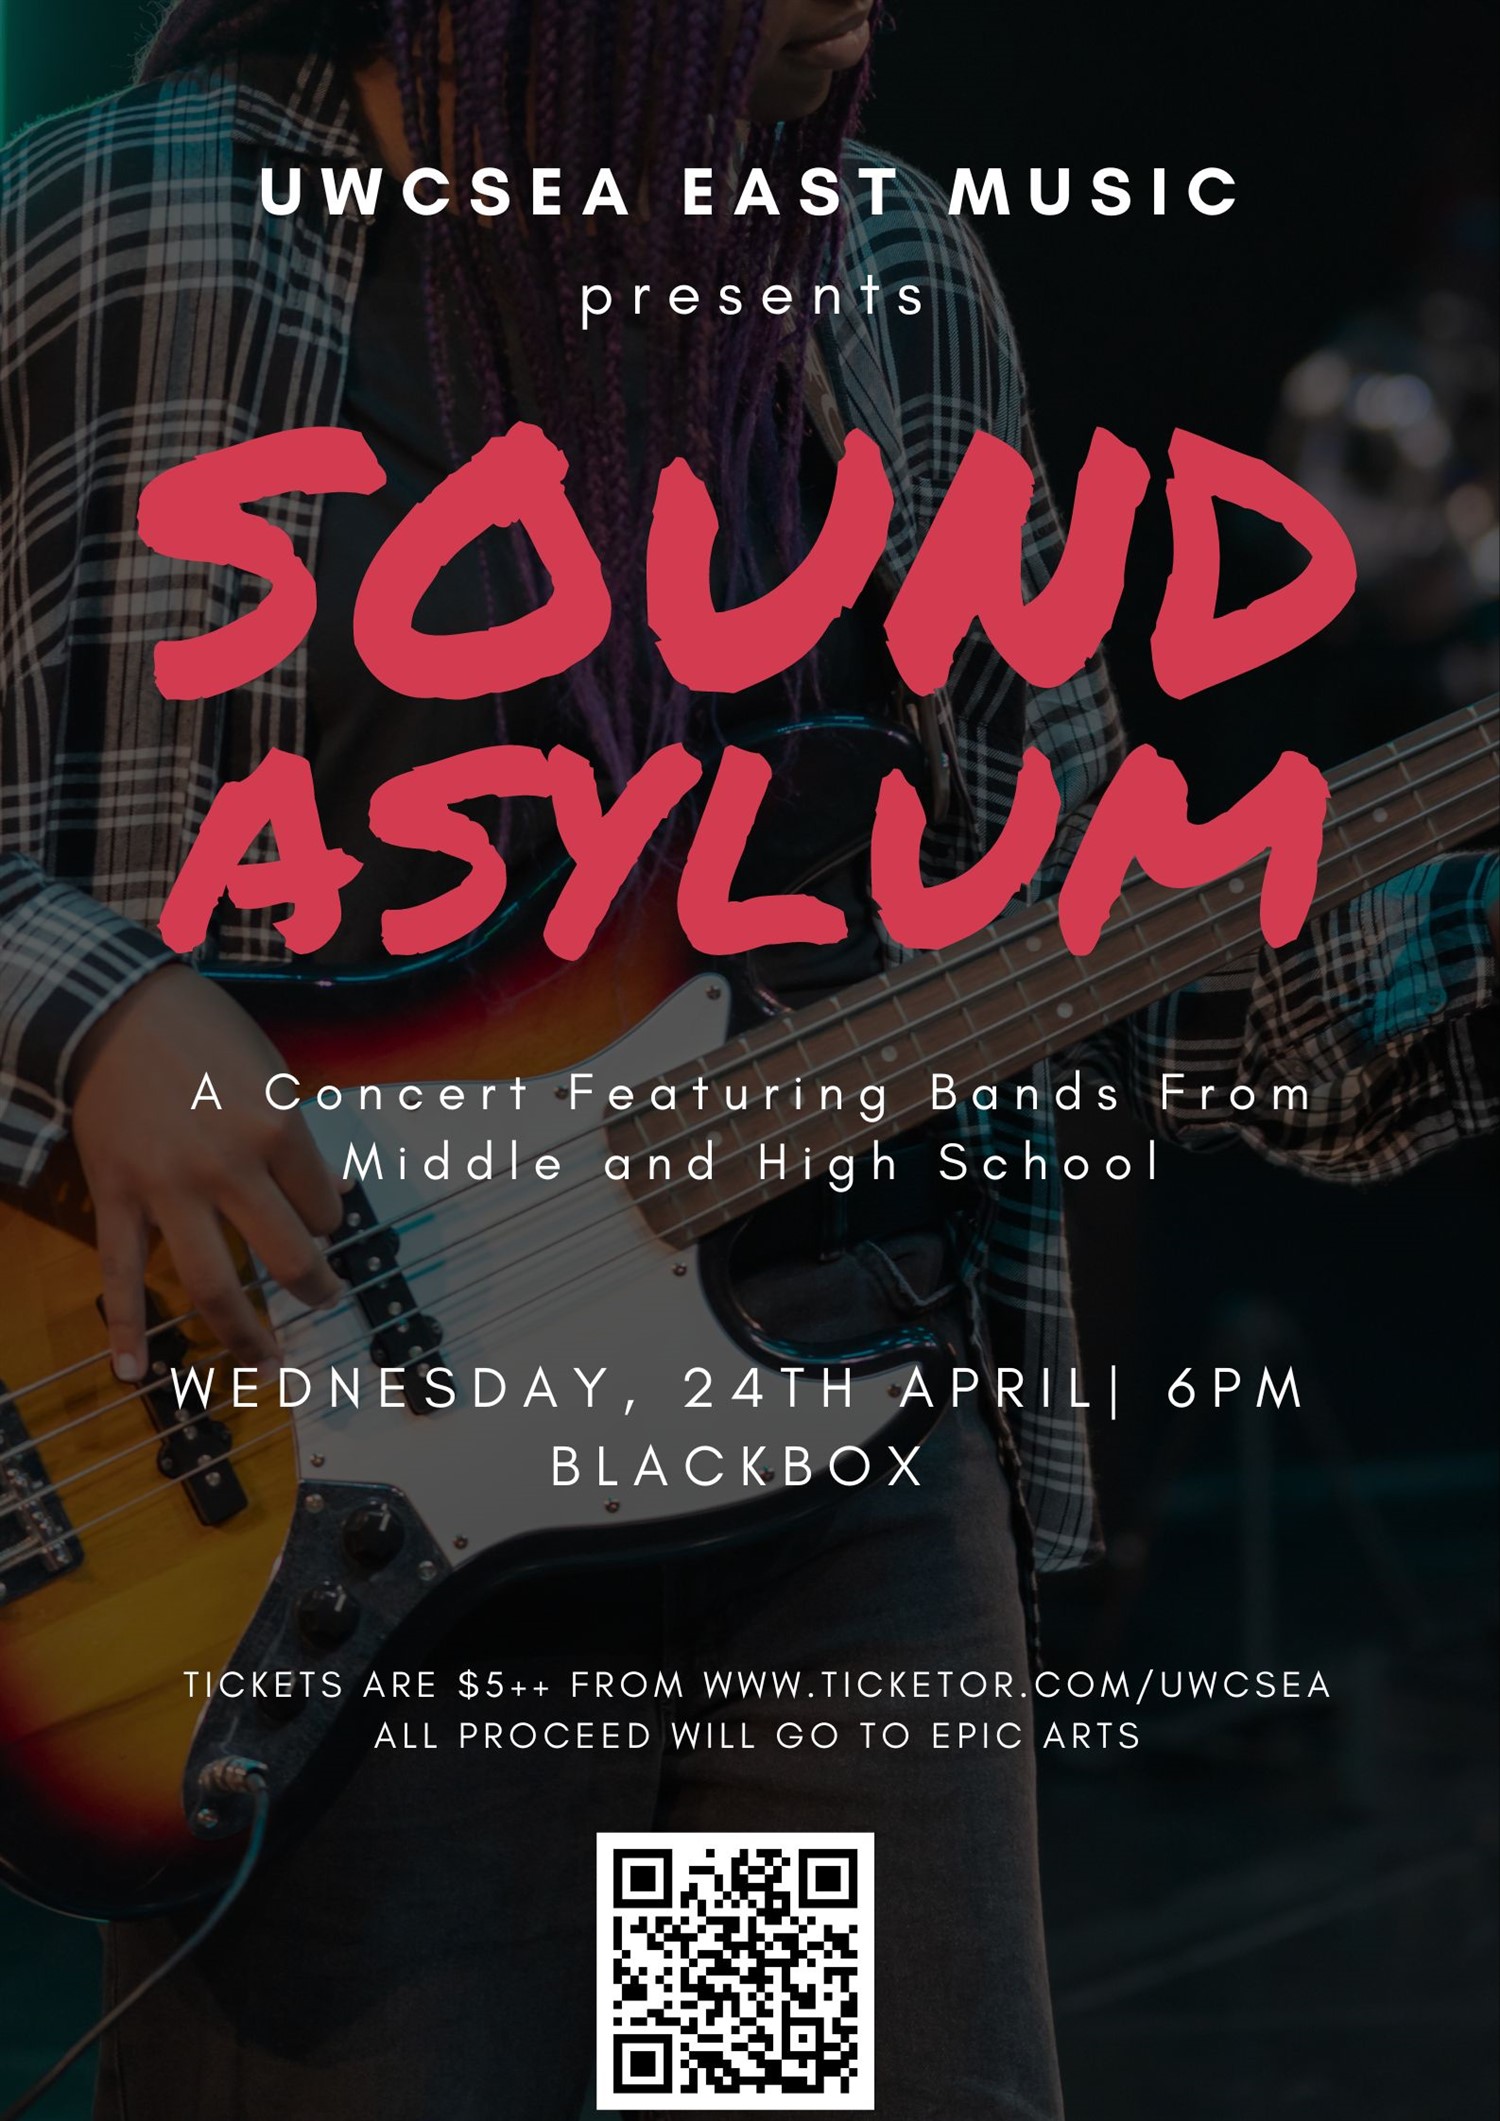 UWCSEA East Music Presents : Sound Asylum (GC00000061)  on abr. 24, 18:00@Black Box @ UWCSEA East - Compra entradas y obtén información enUWCSEA Ticket Hub uwcsea